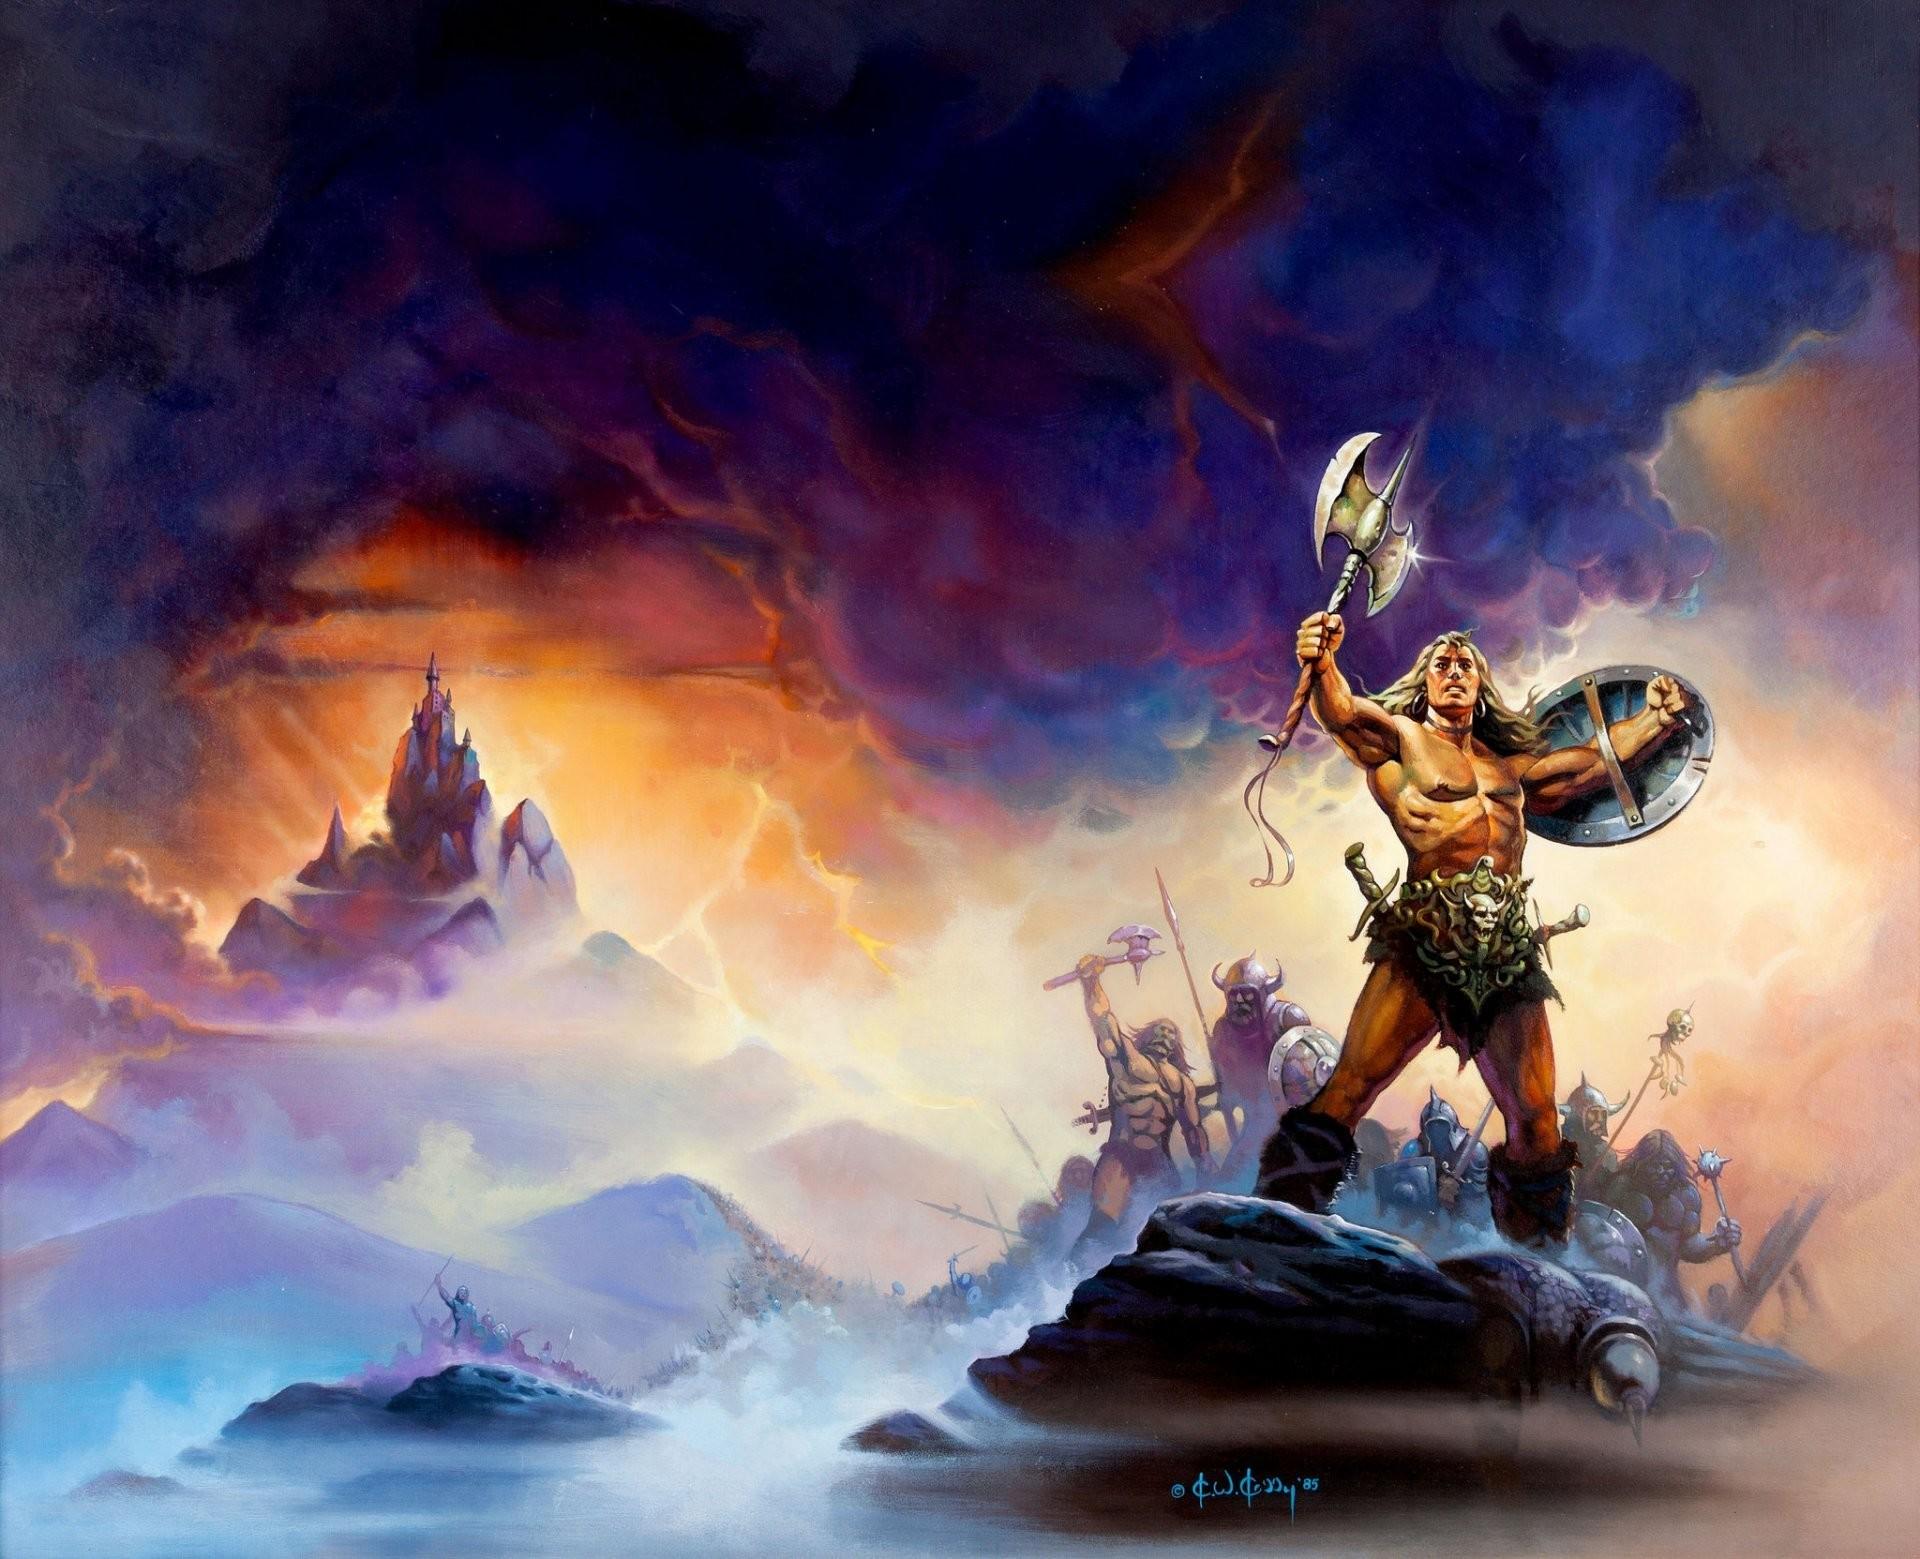 Conan the Barbarian Wallpaper